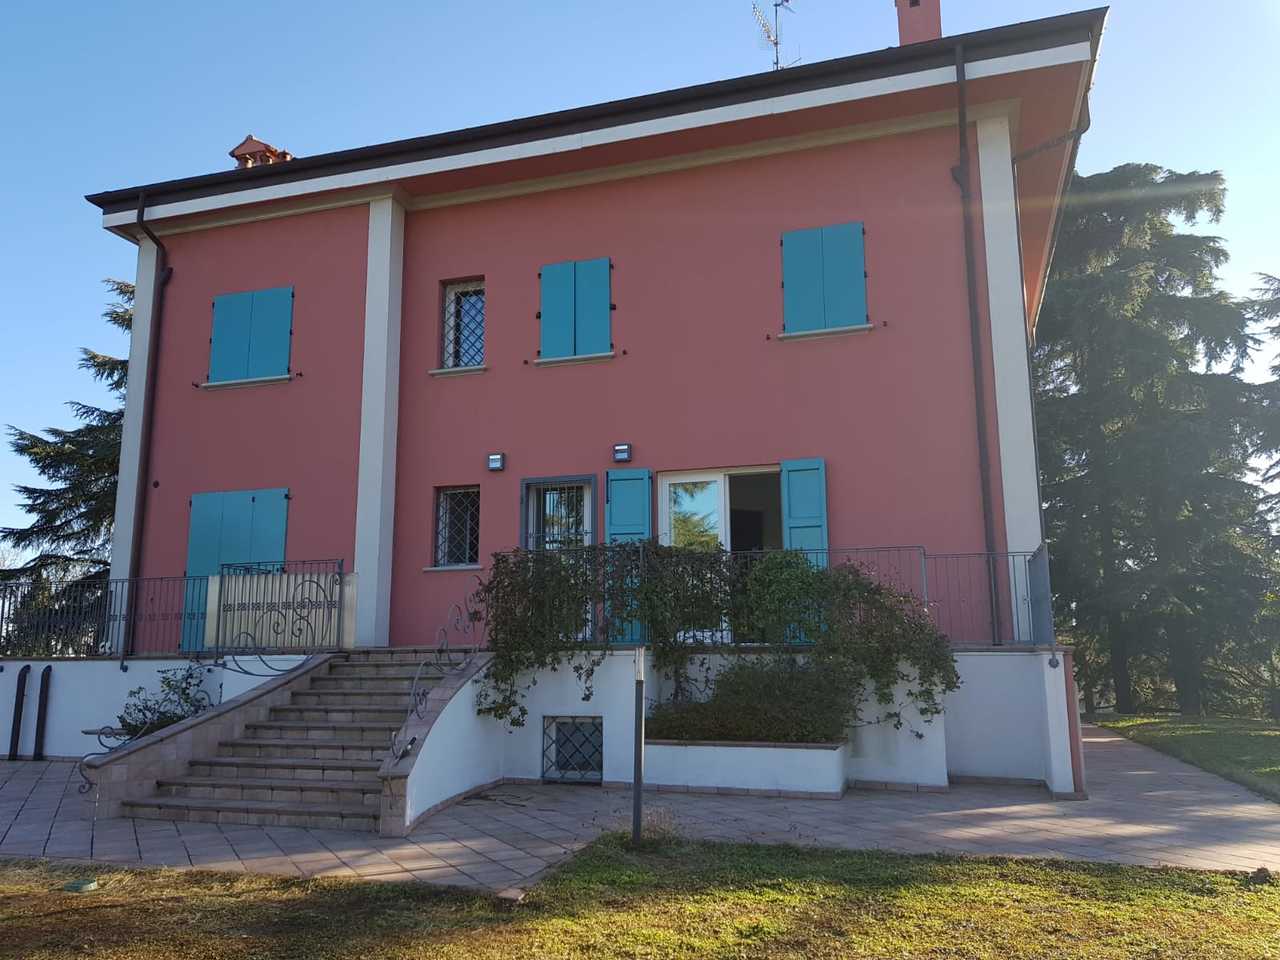 A vendre villa in zone tranquille Bologna Emilia-Romagna